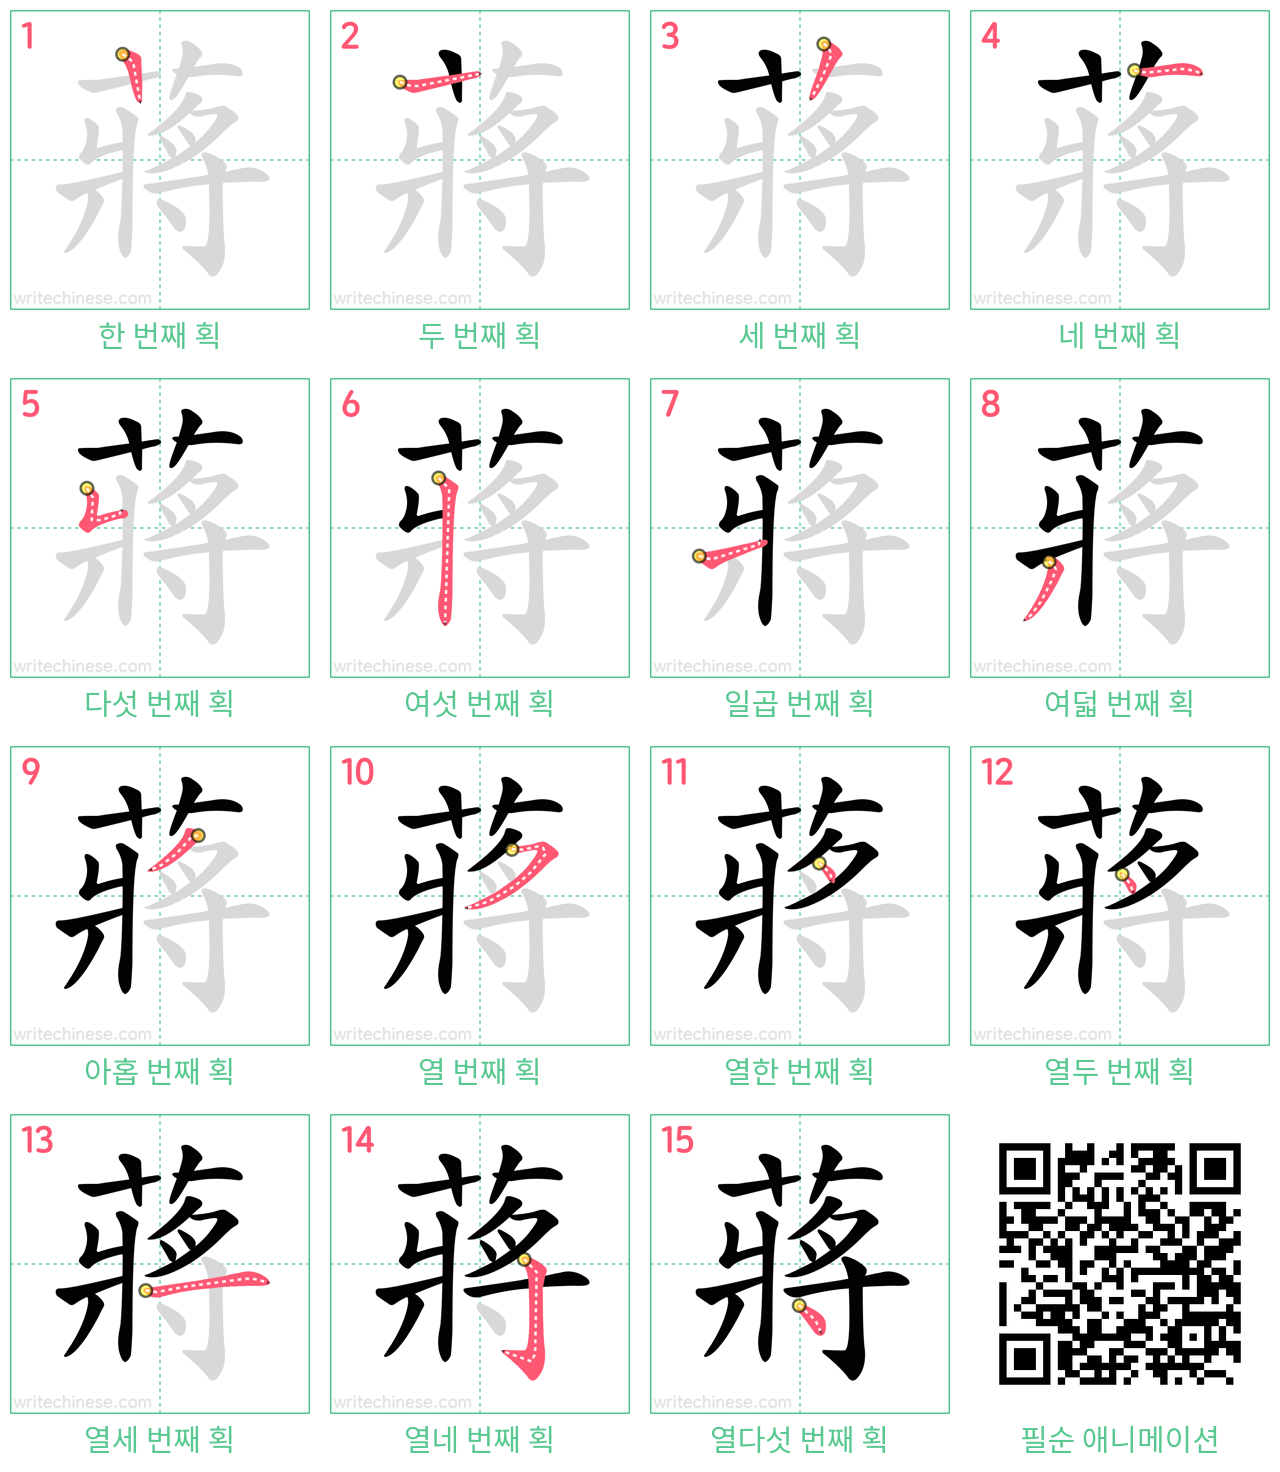 蔣 step-by-step stroke order diagrams